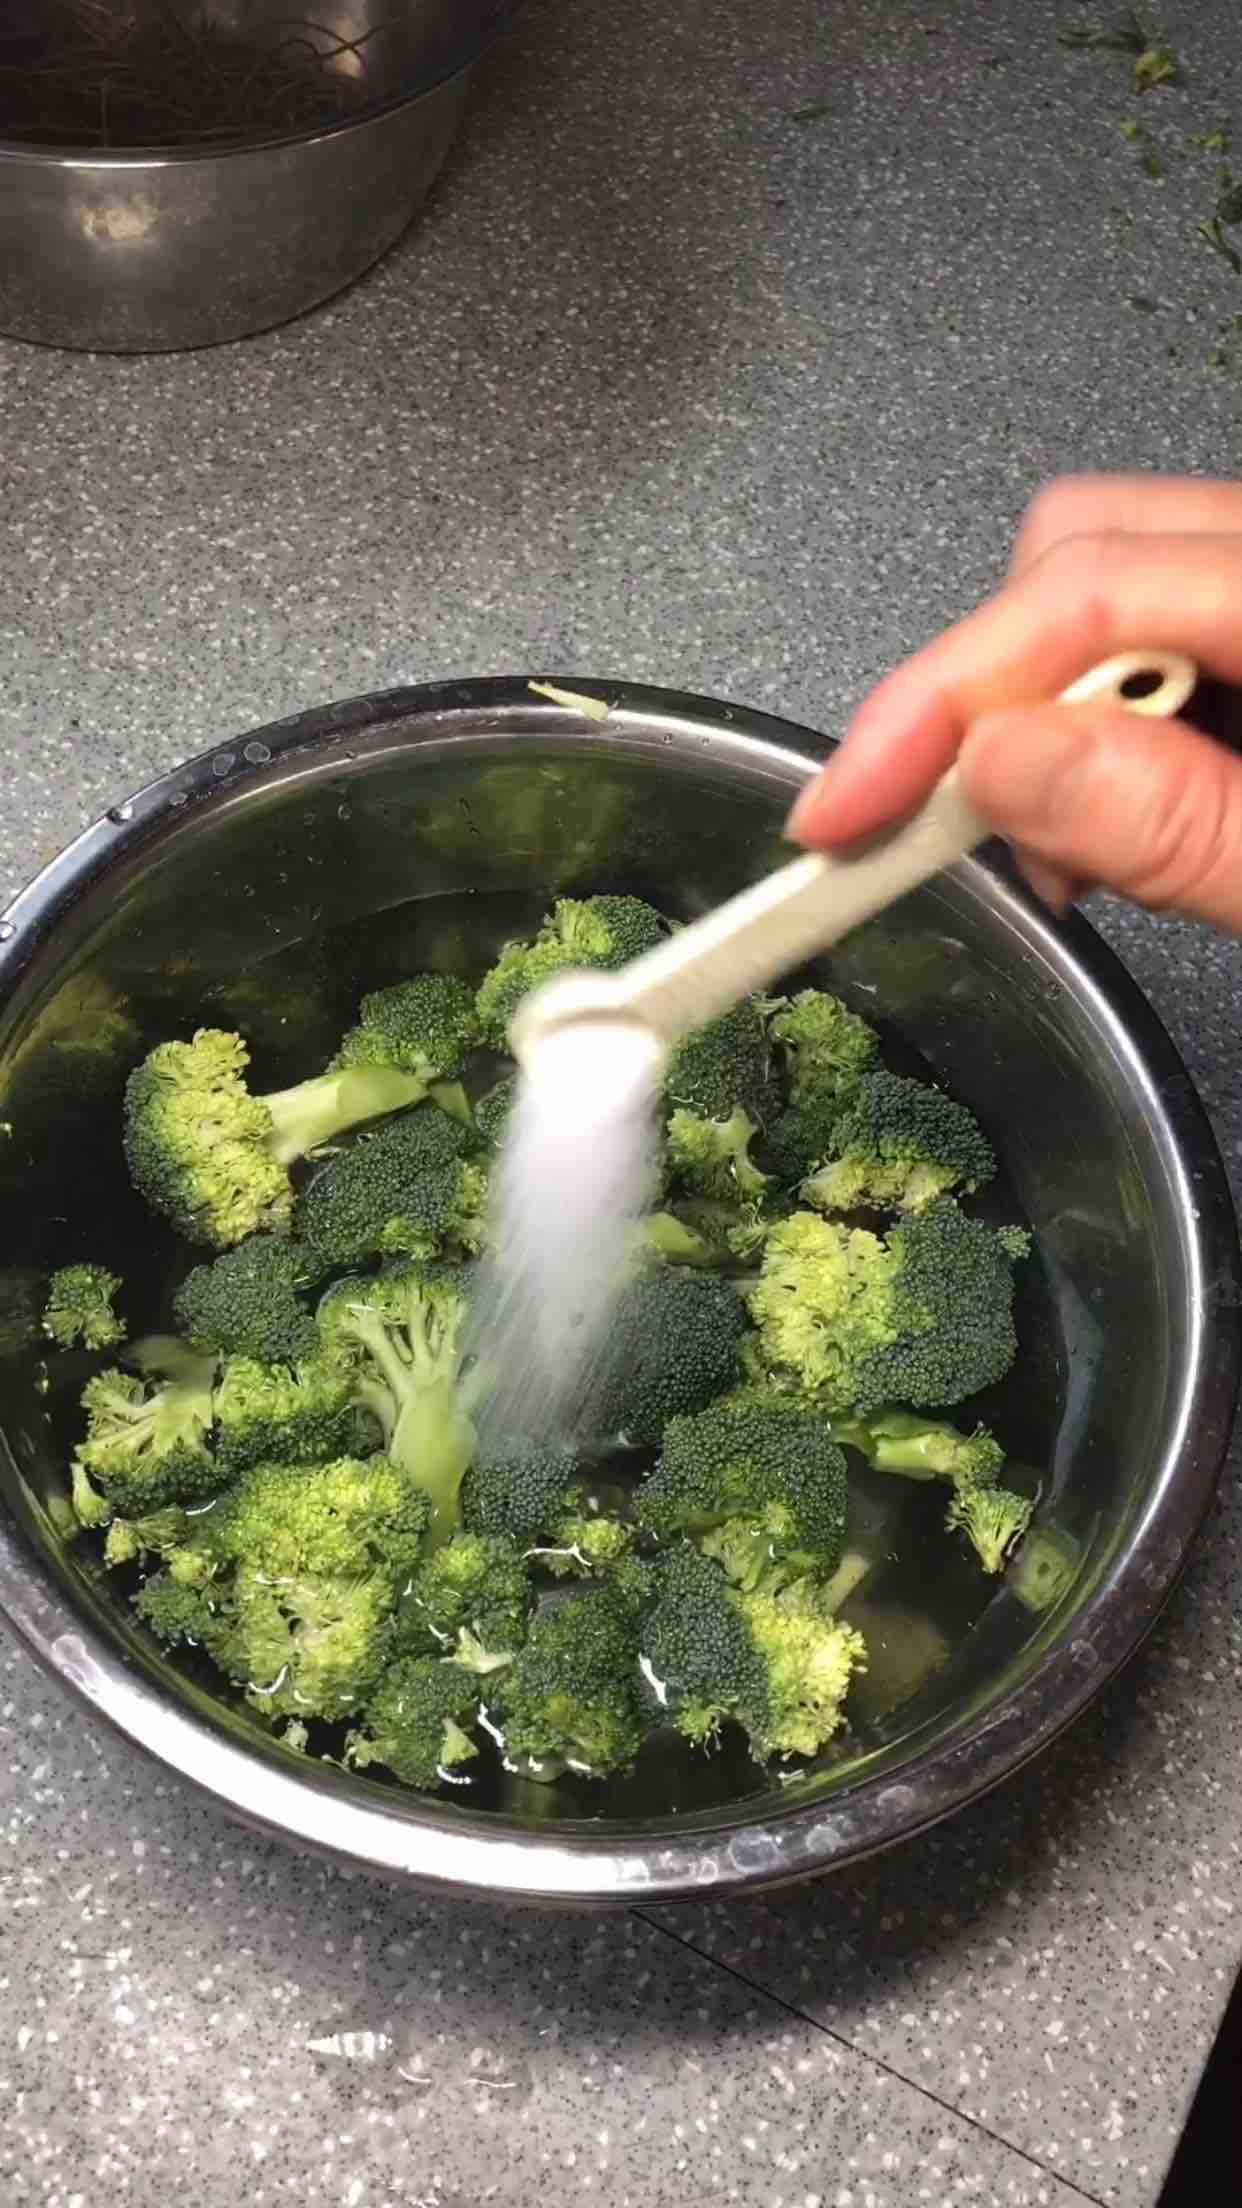 Steamed Broccoli recipe